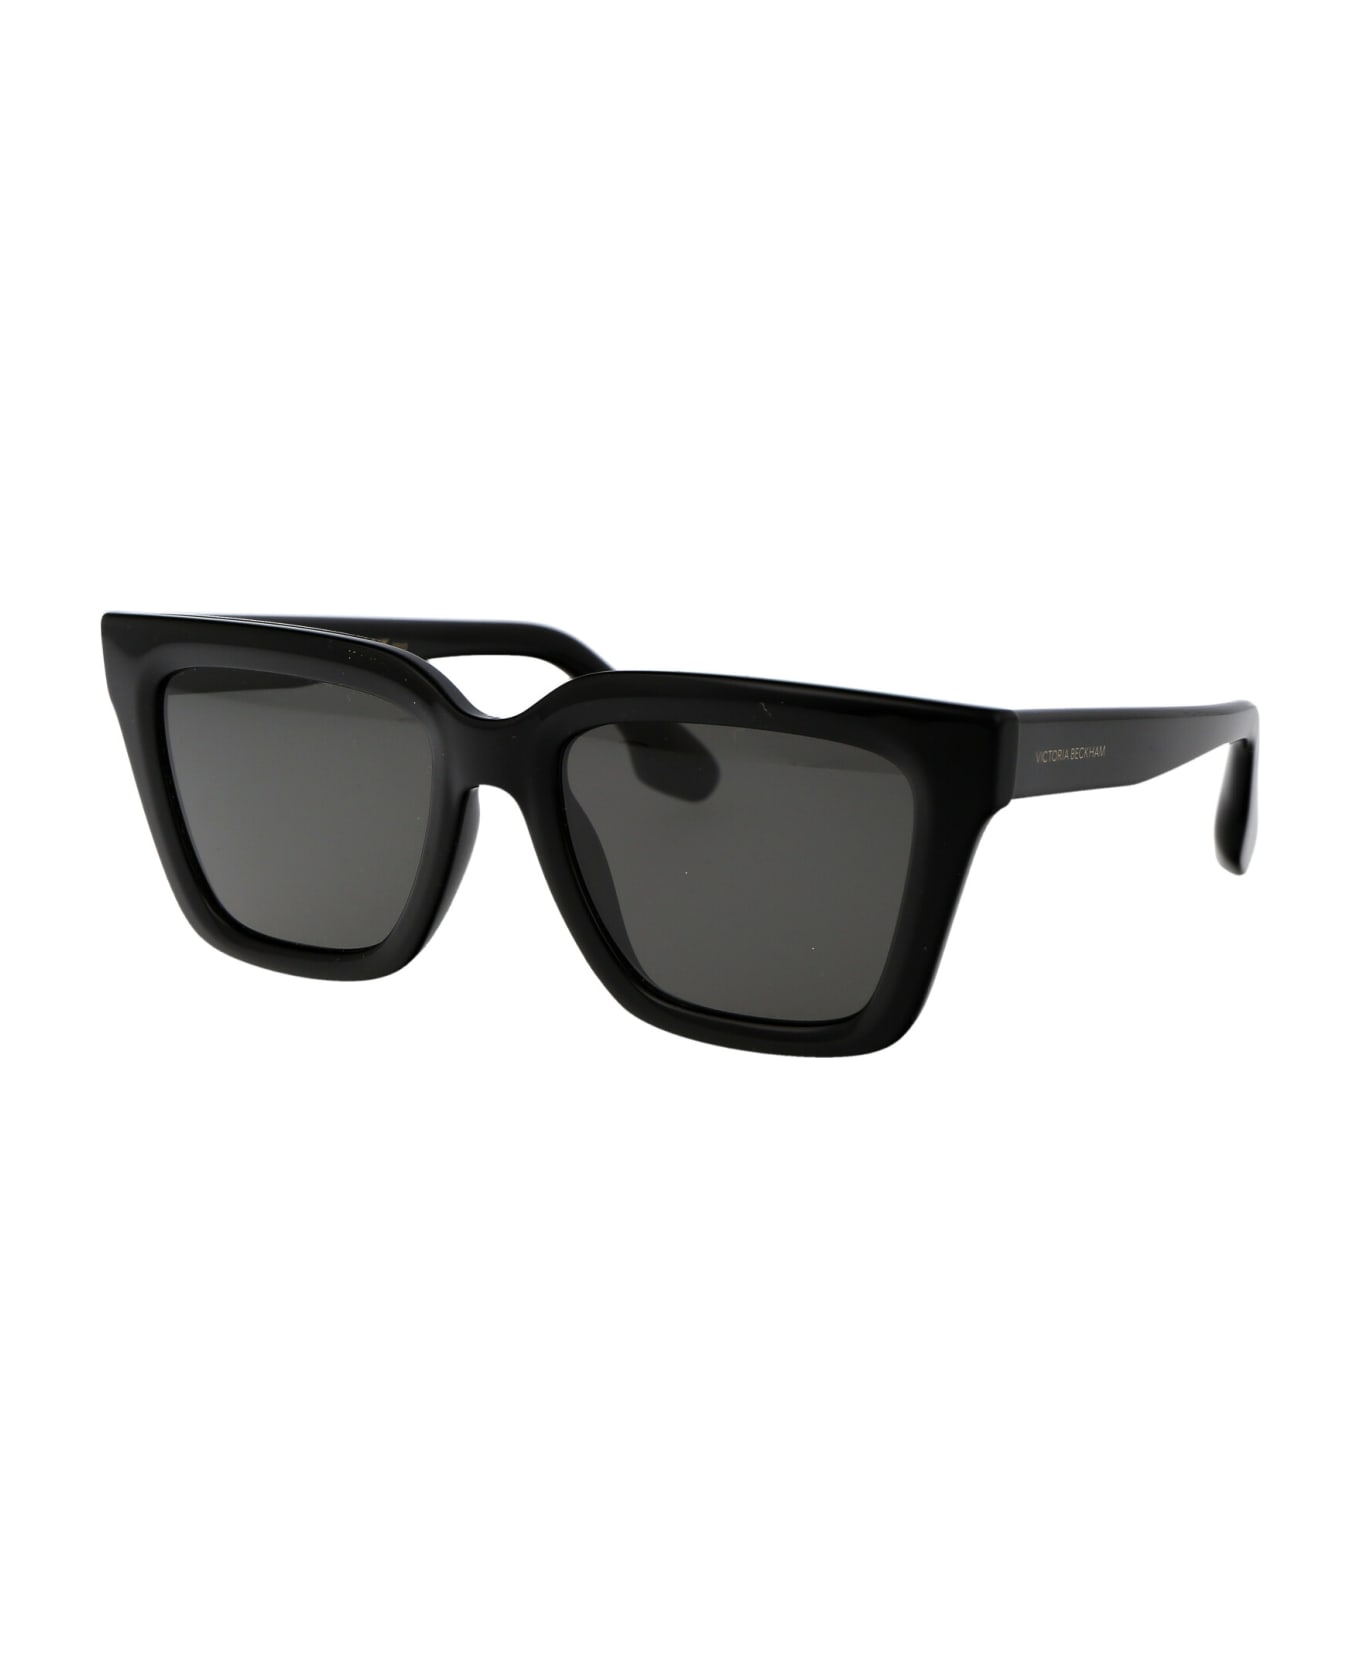 Victoria Beckham Vb644s Sunglasses - 001 BLACK